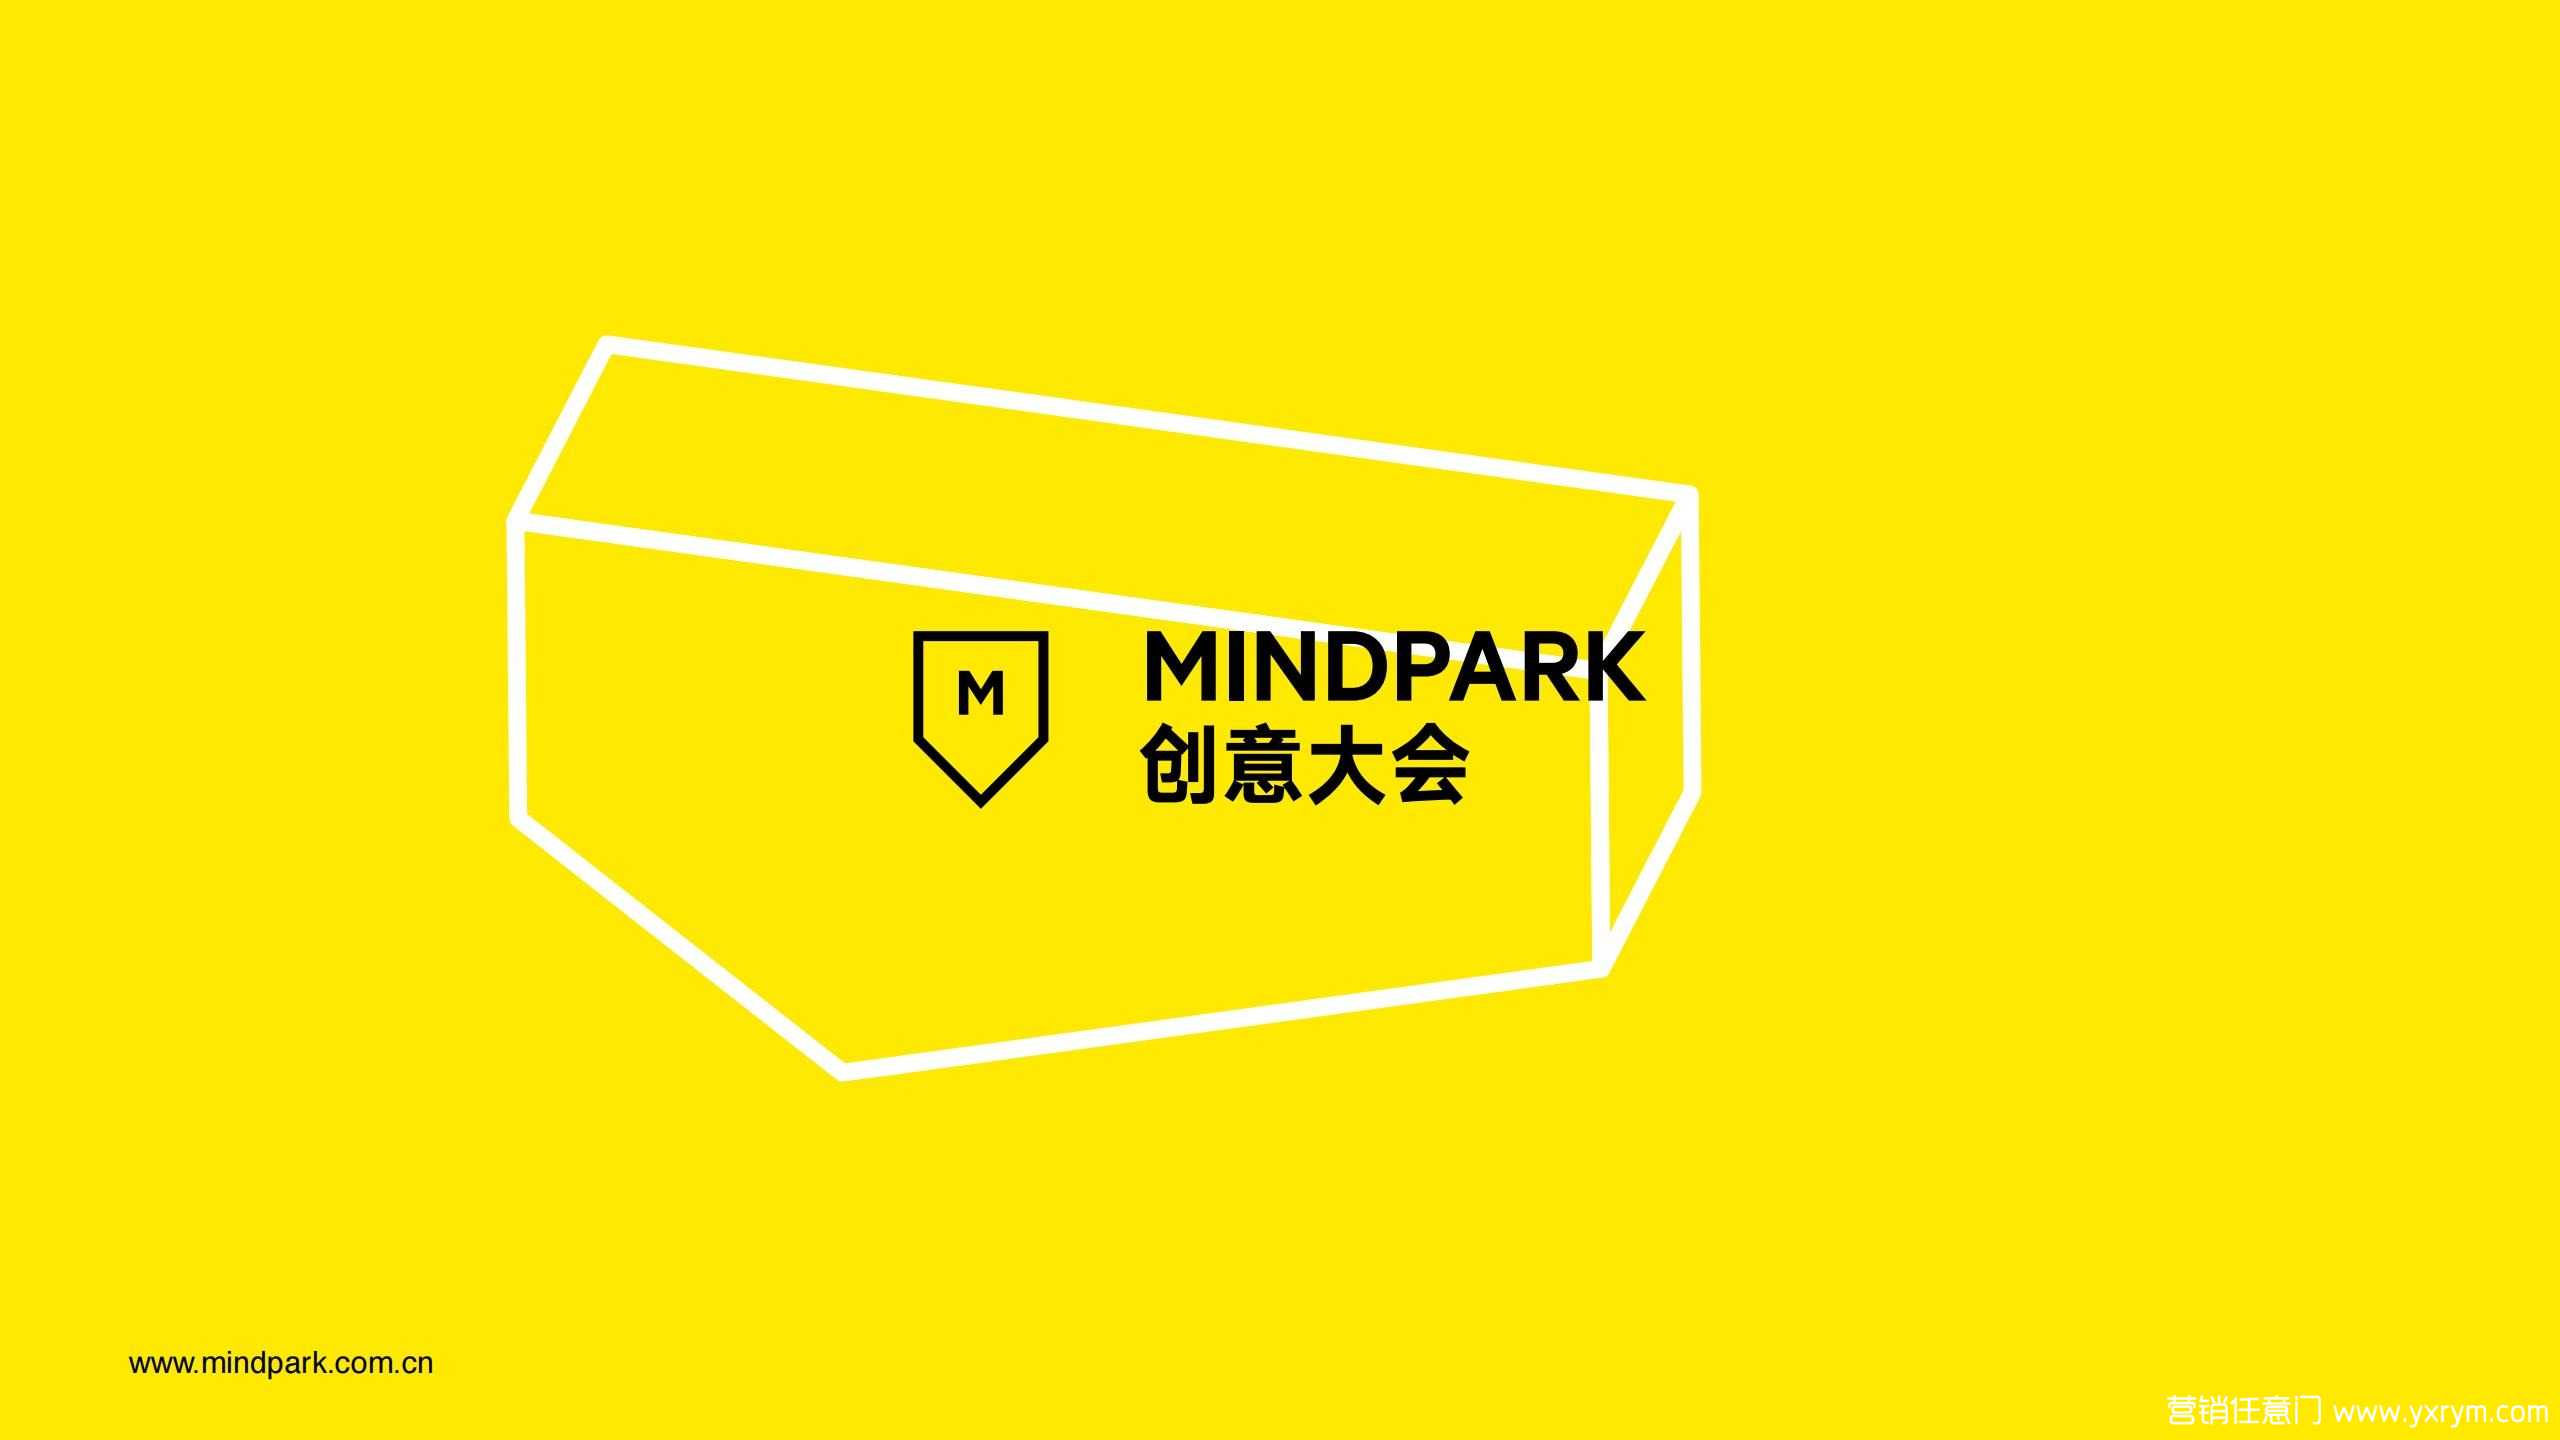 【营销任意门】MINDPARK创意大会介绍方案_00